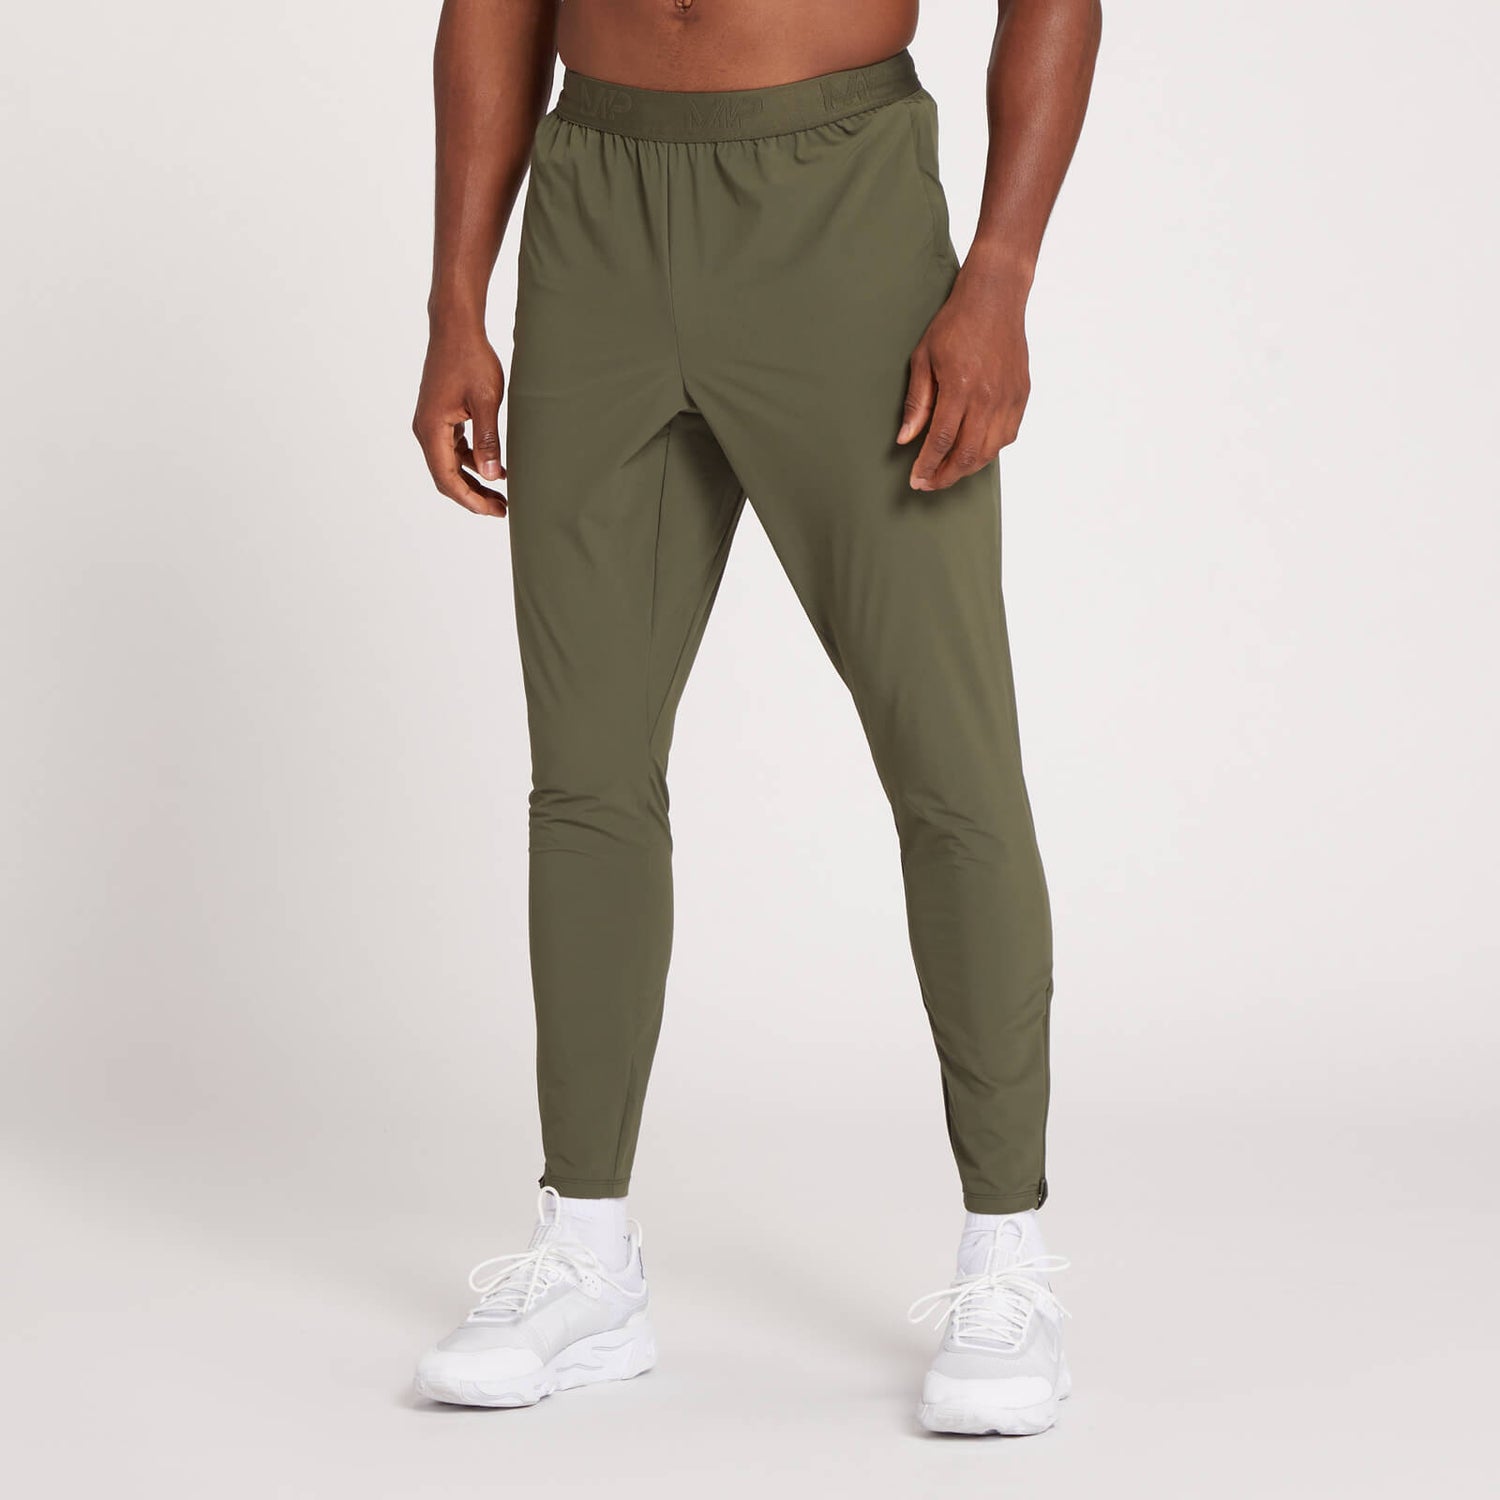 Pantalón deportivo de entrenamiento de corte ajustado Dynamic para hombre de MP - Verde aceituna oscuro - L